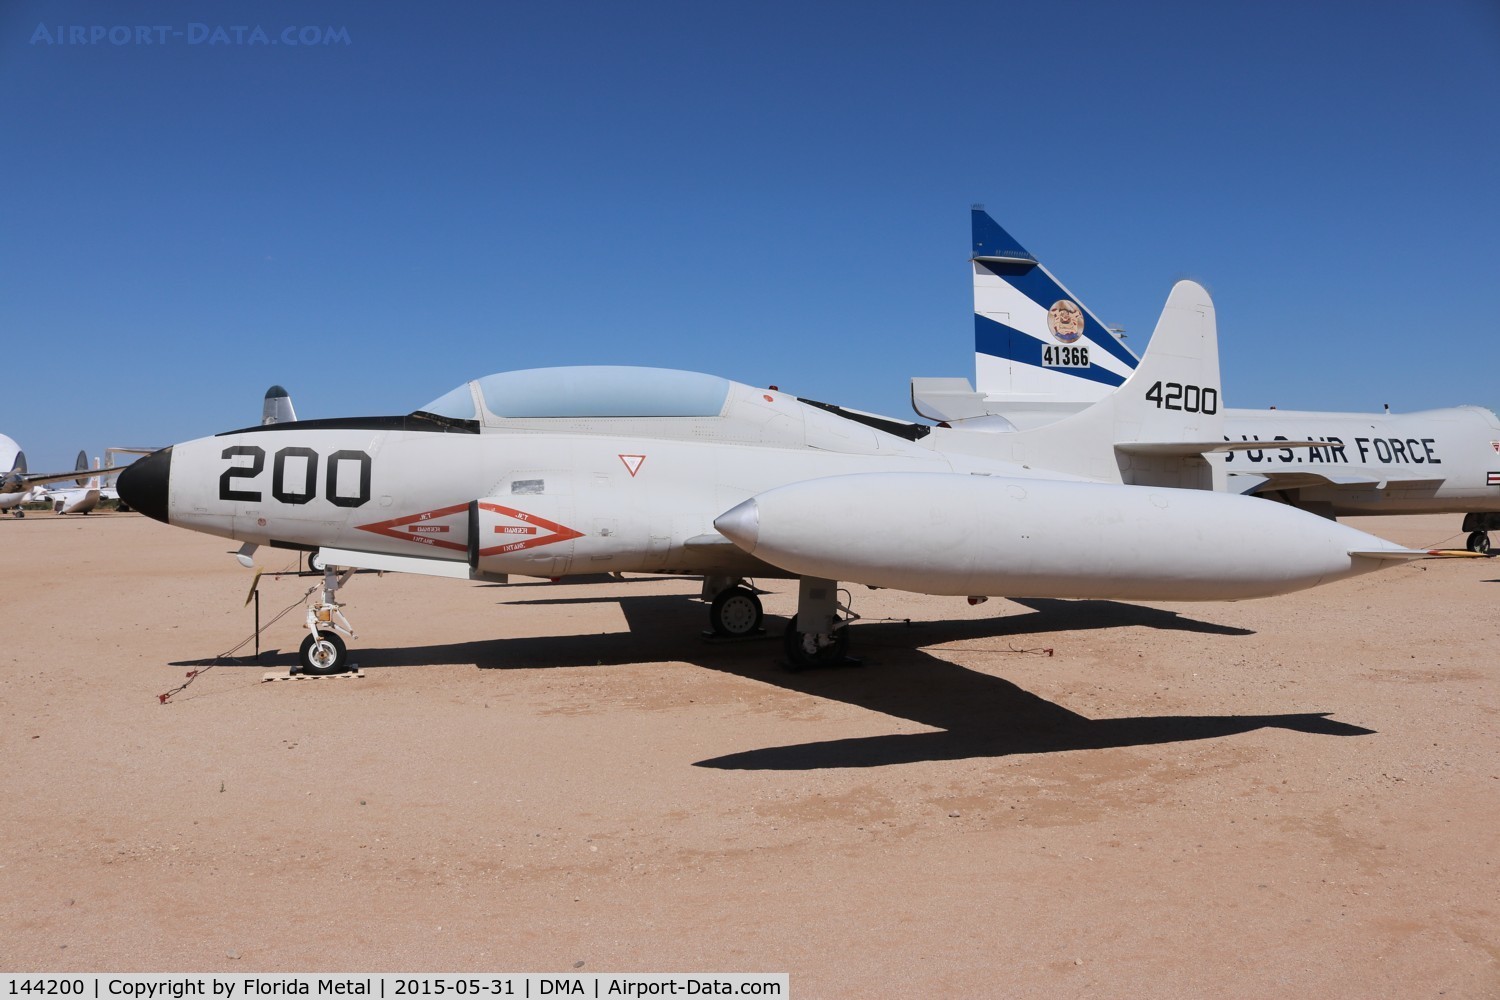 144200, 1957 Lockheed T-1A Seastar C/N 1080-1104, T-1A Seastar